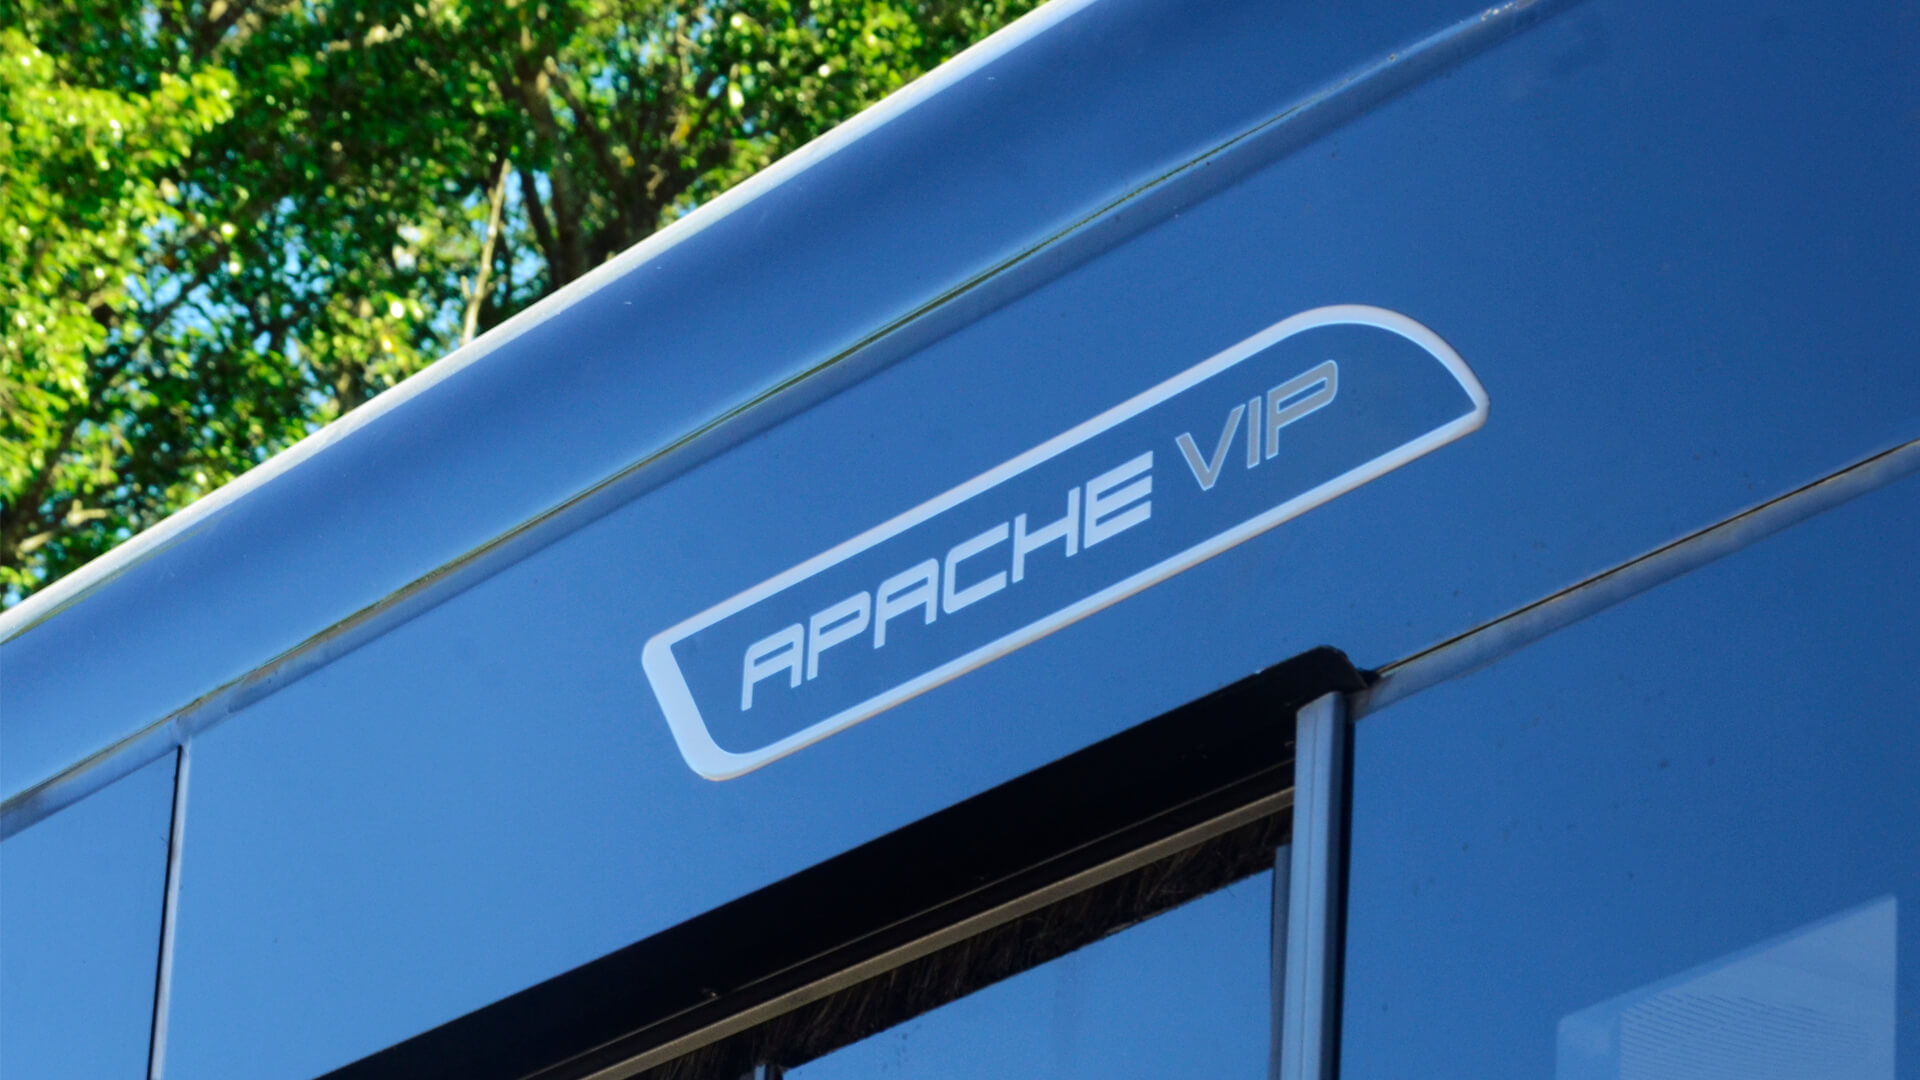 APACHE VIP V